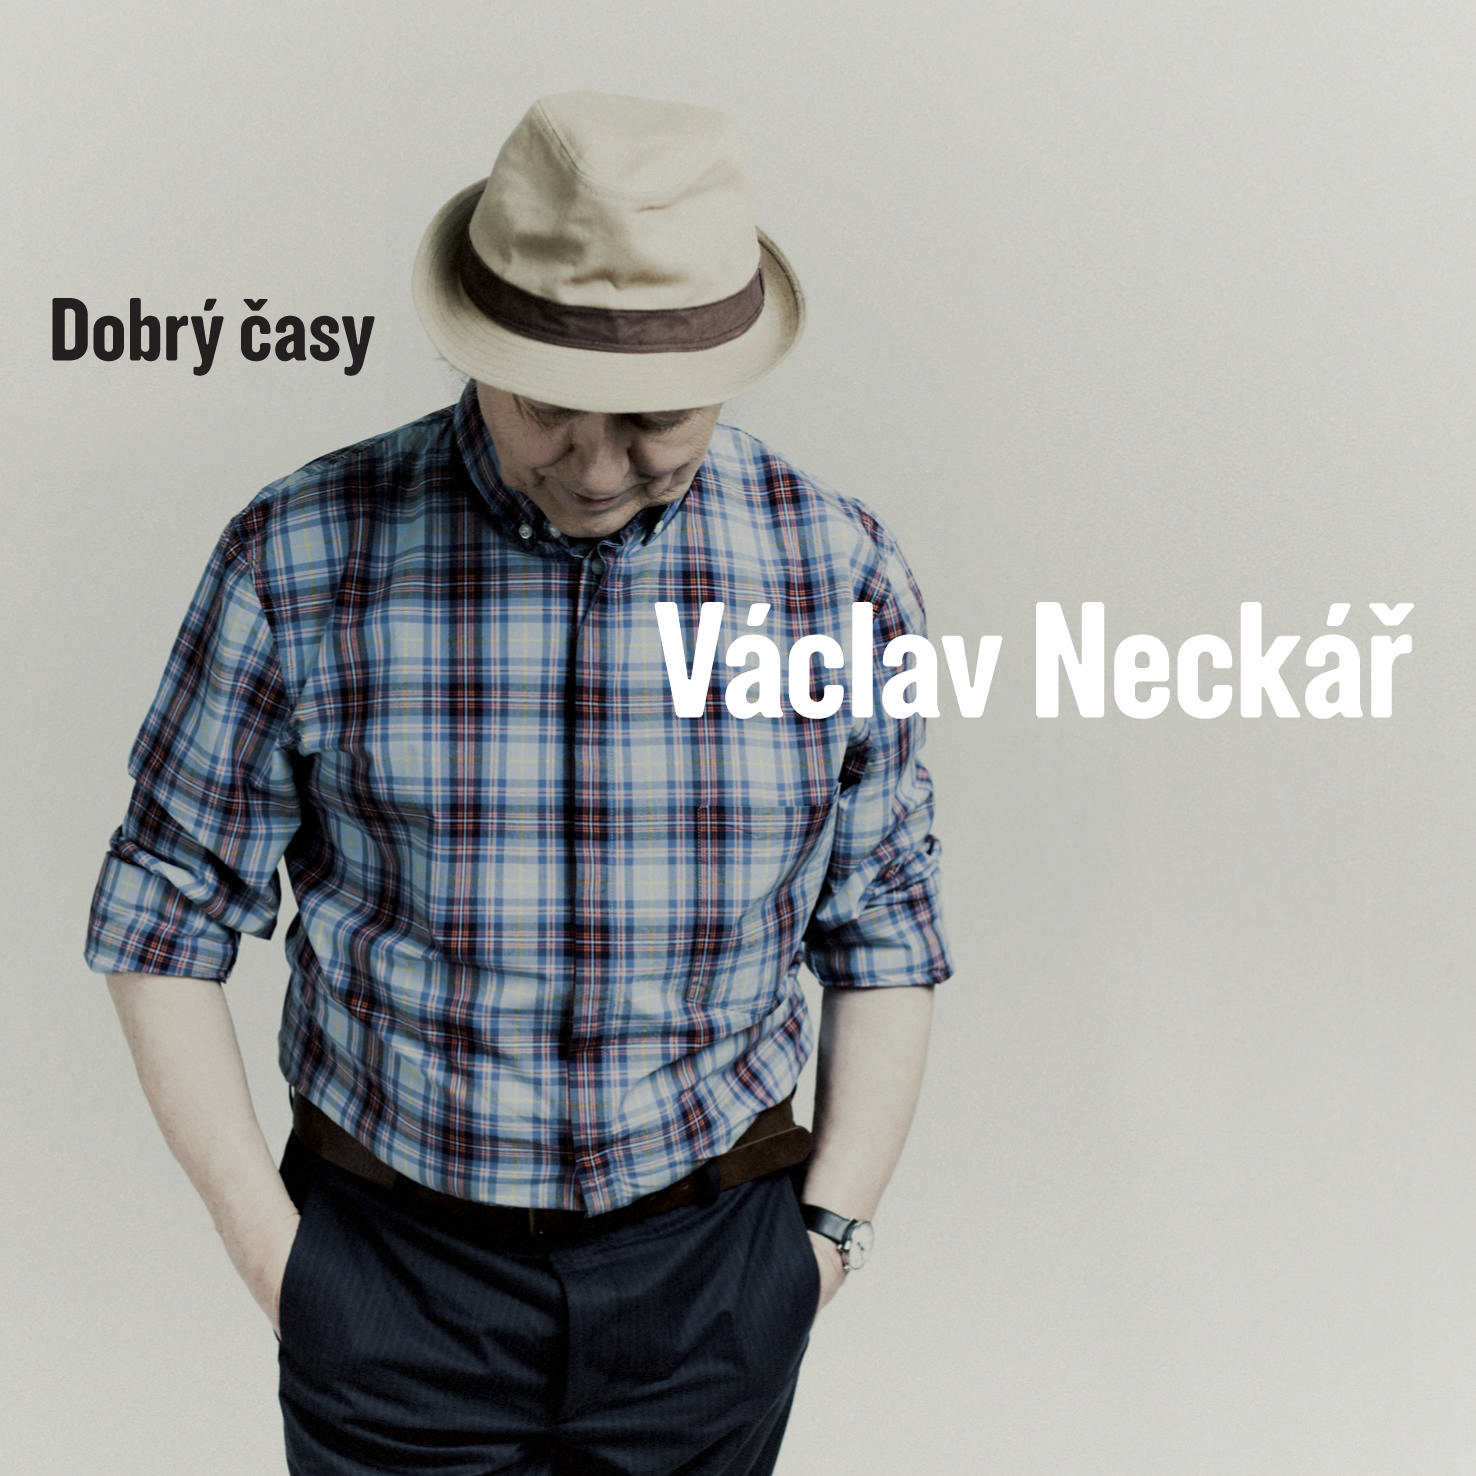 CD Shop - NECKAR VACLAV DOBRY CASY